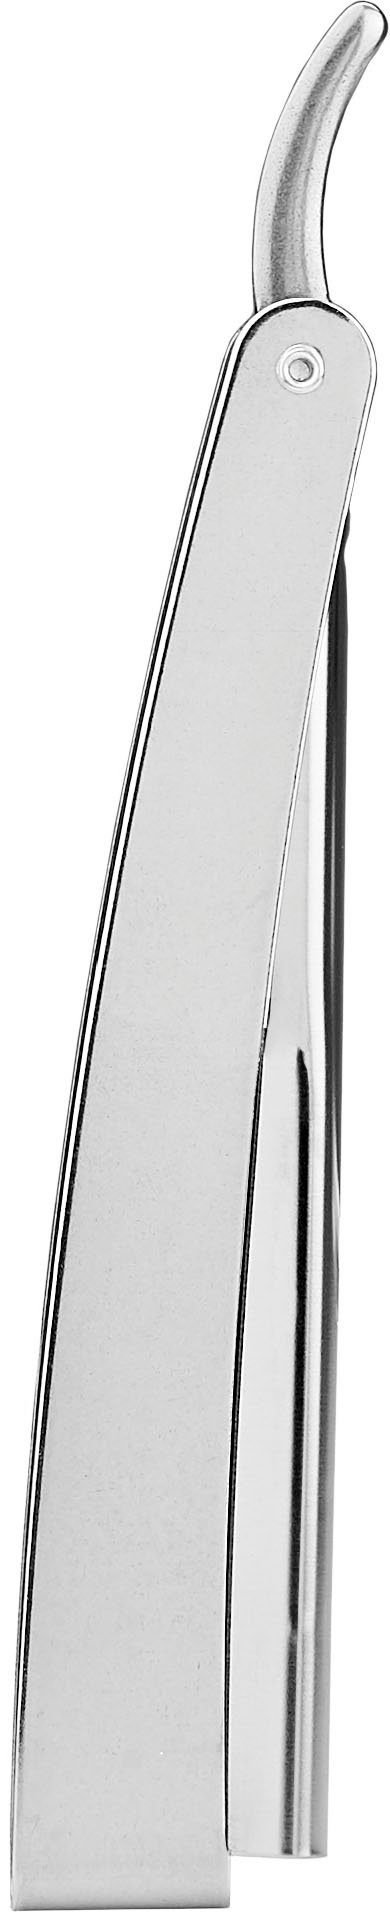 mit Rasiermesser Rasiermesser silberfarben, 1955 FRIPAC Klappgriff praktischem